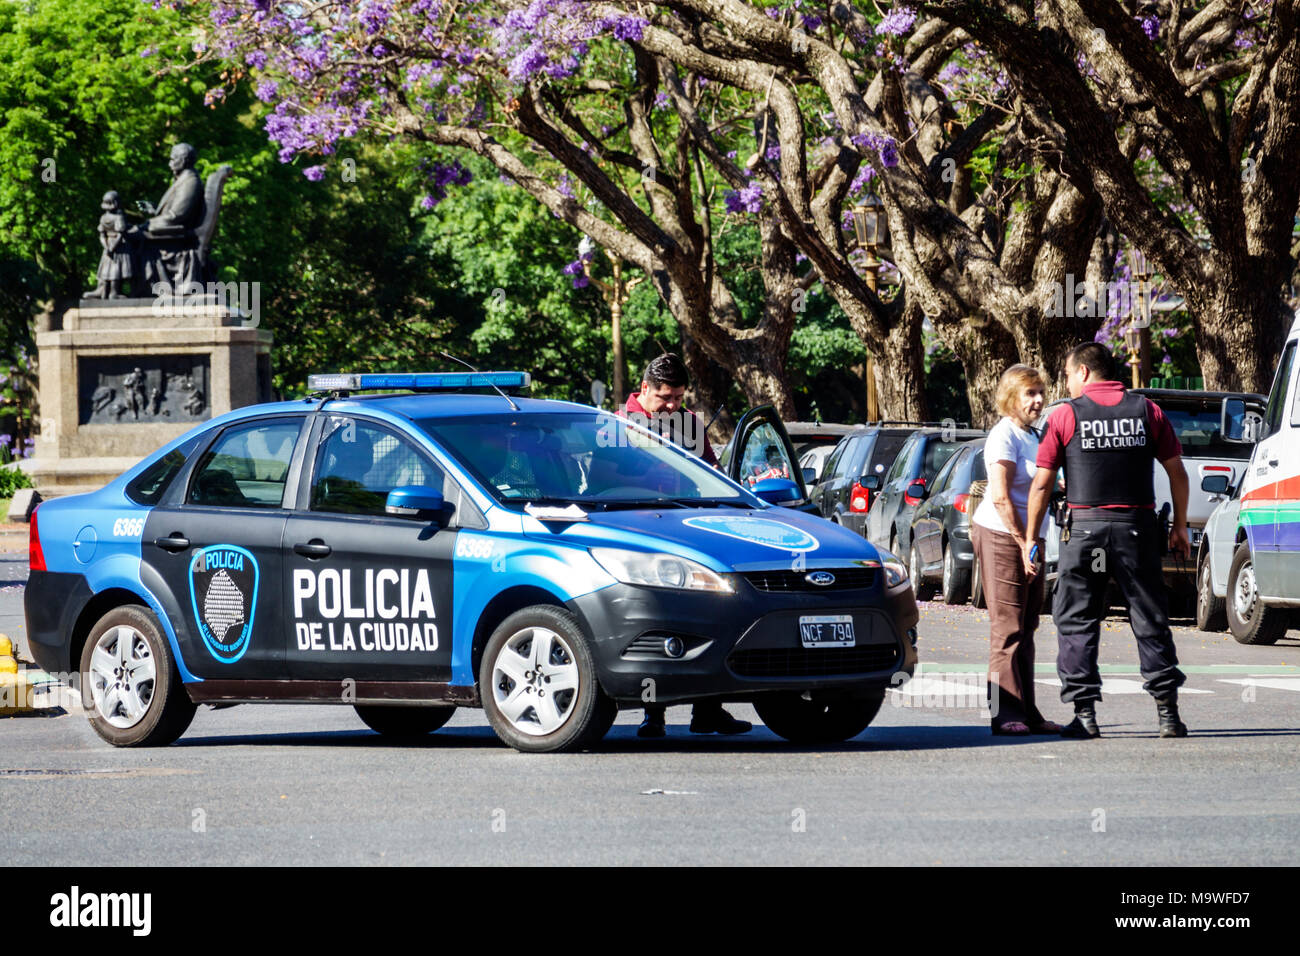 Buenos Aires Argentina,Avenida del Libertador,polizia di polizia,auto,uomo uomini maschio,donna donna donne,ufficiale,ispanico,ARG171130170 Foto Stock